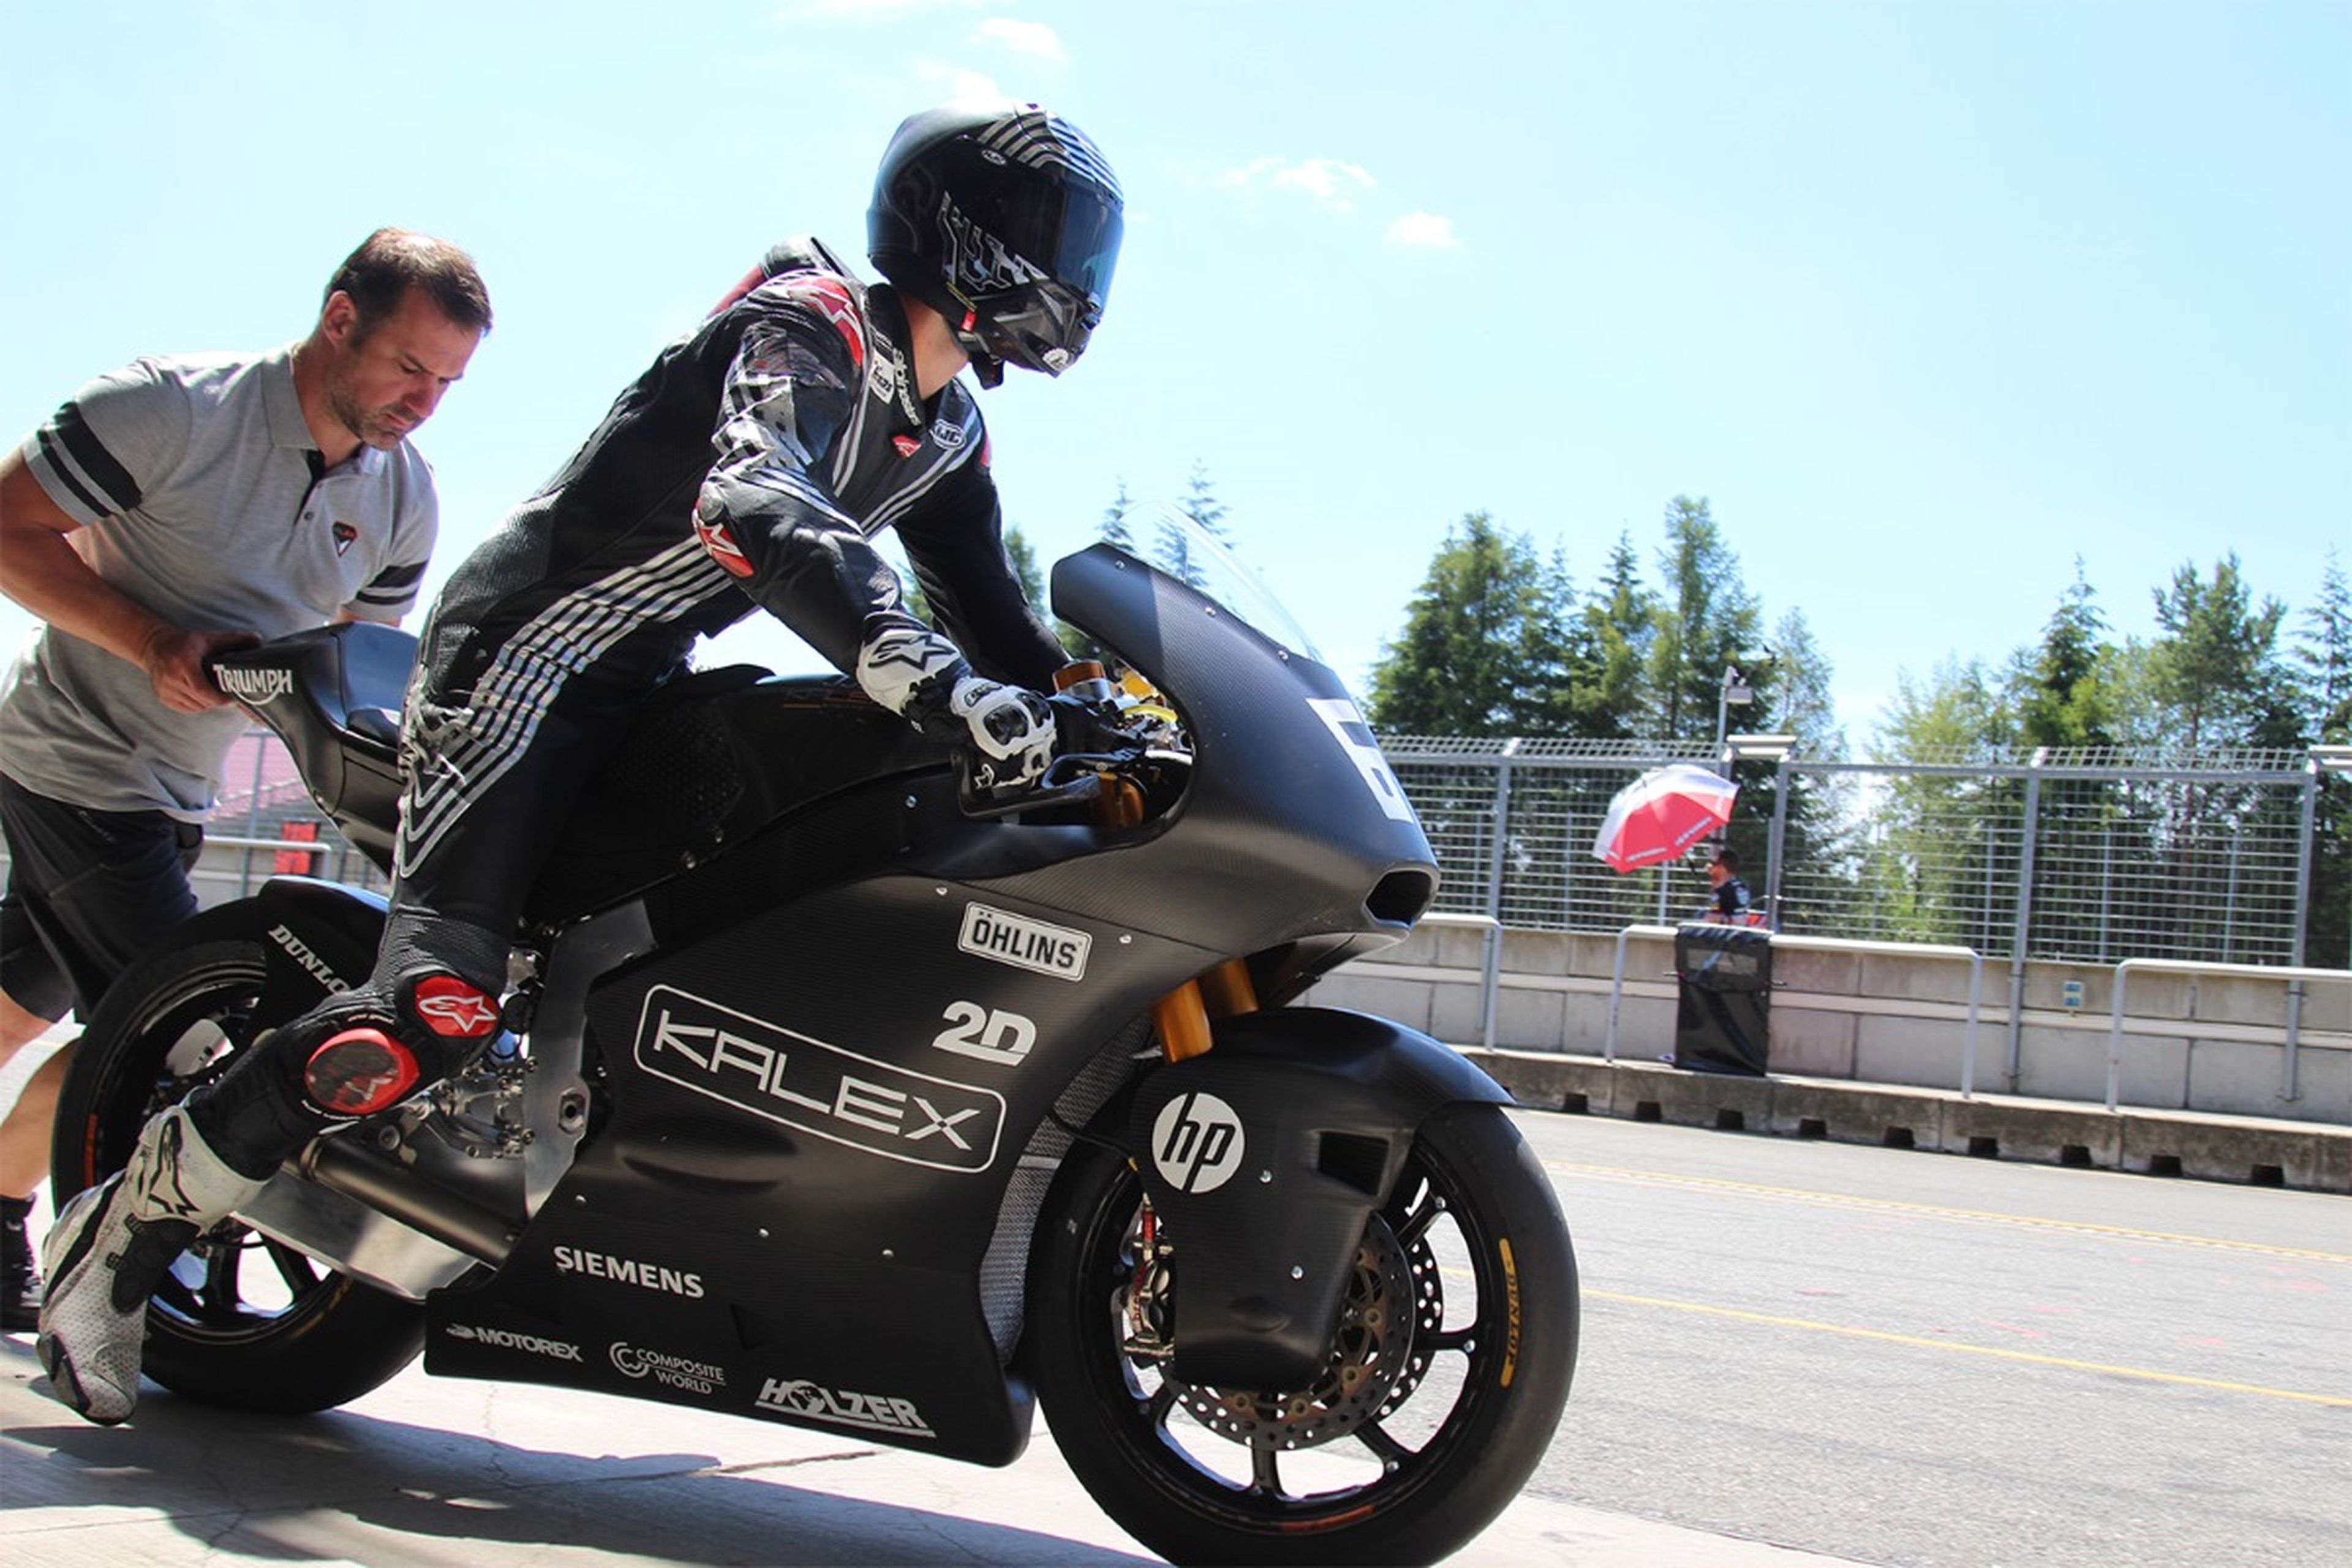 Jonas Folger prueba la Kalex de Moto2 con motor Triumph